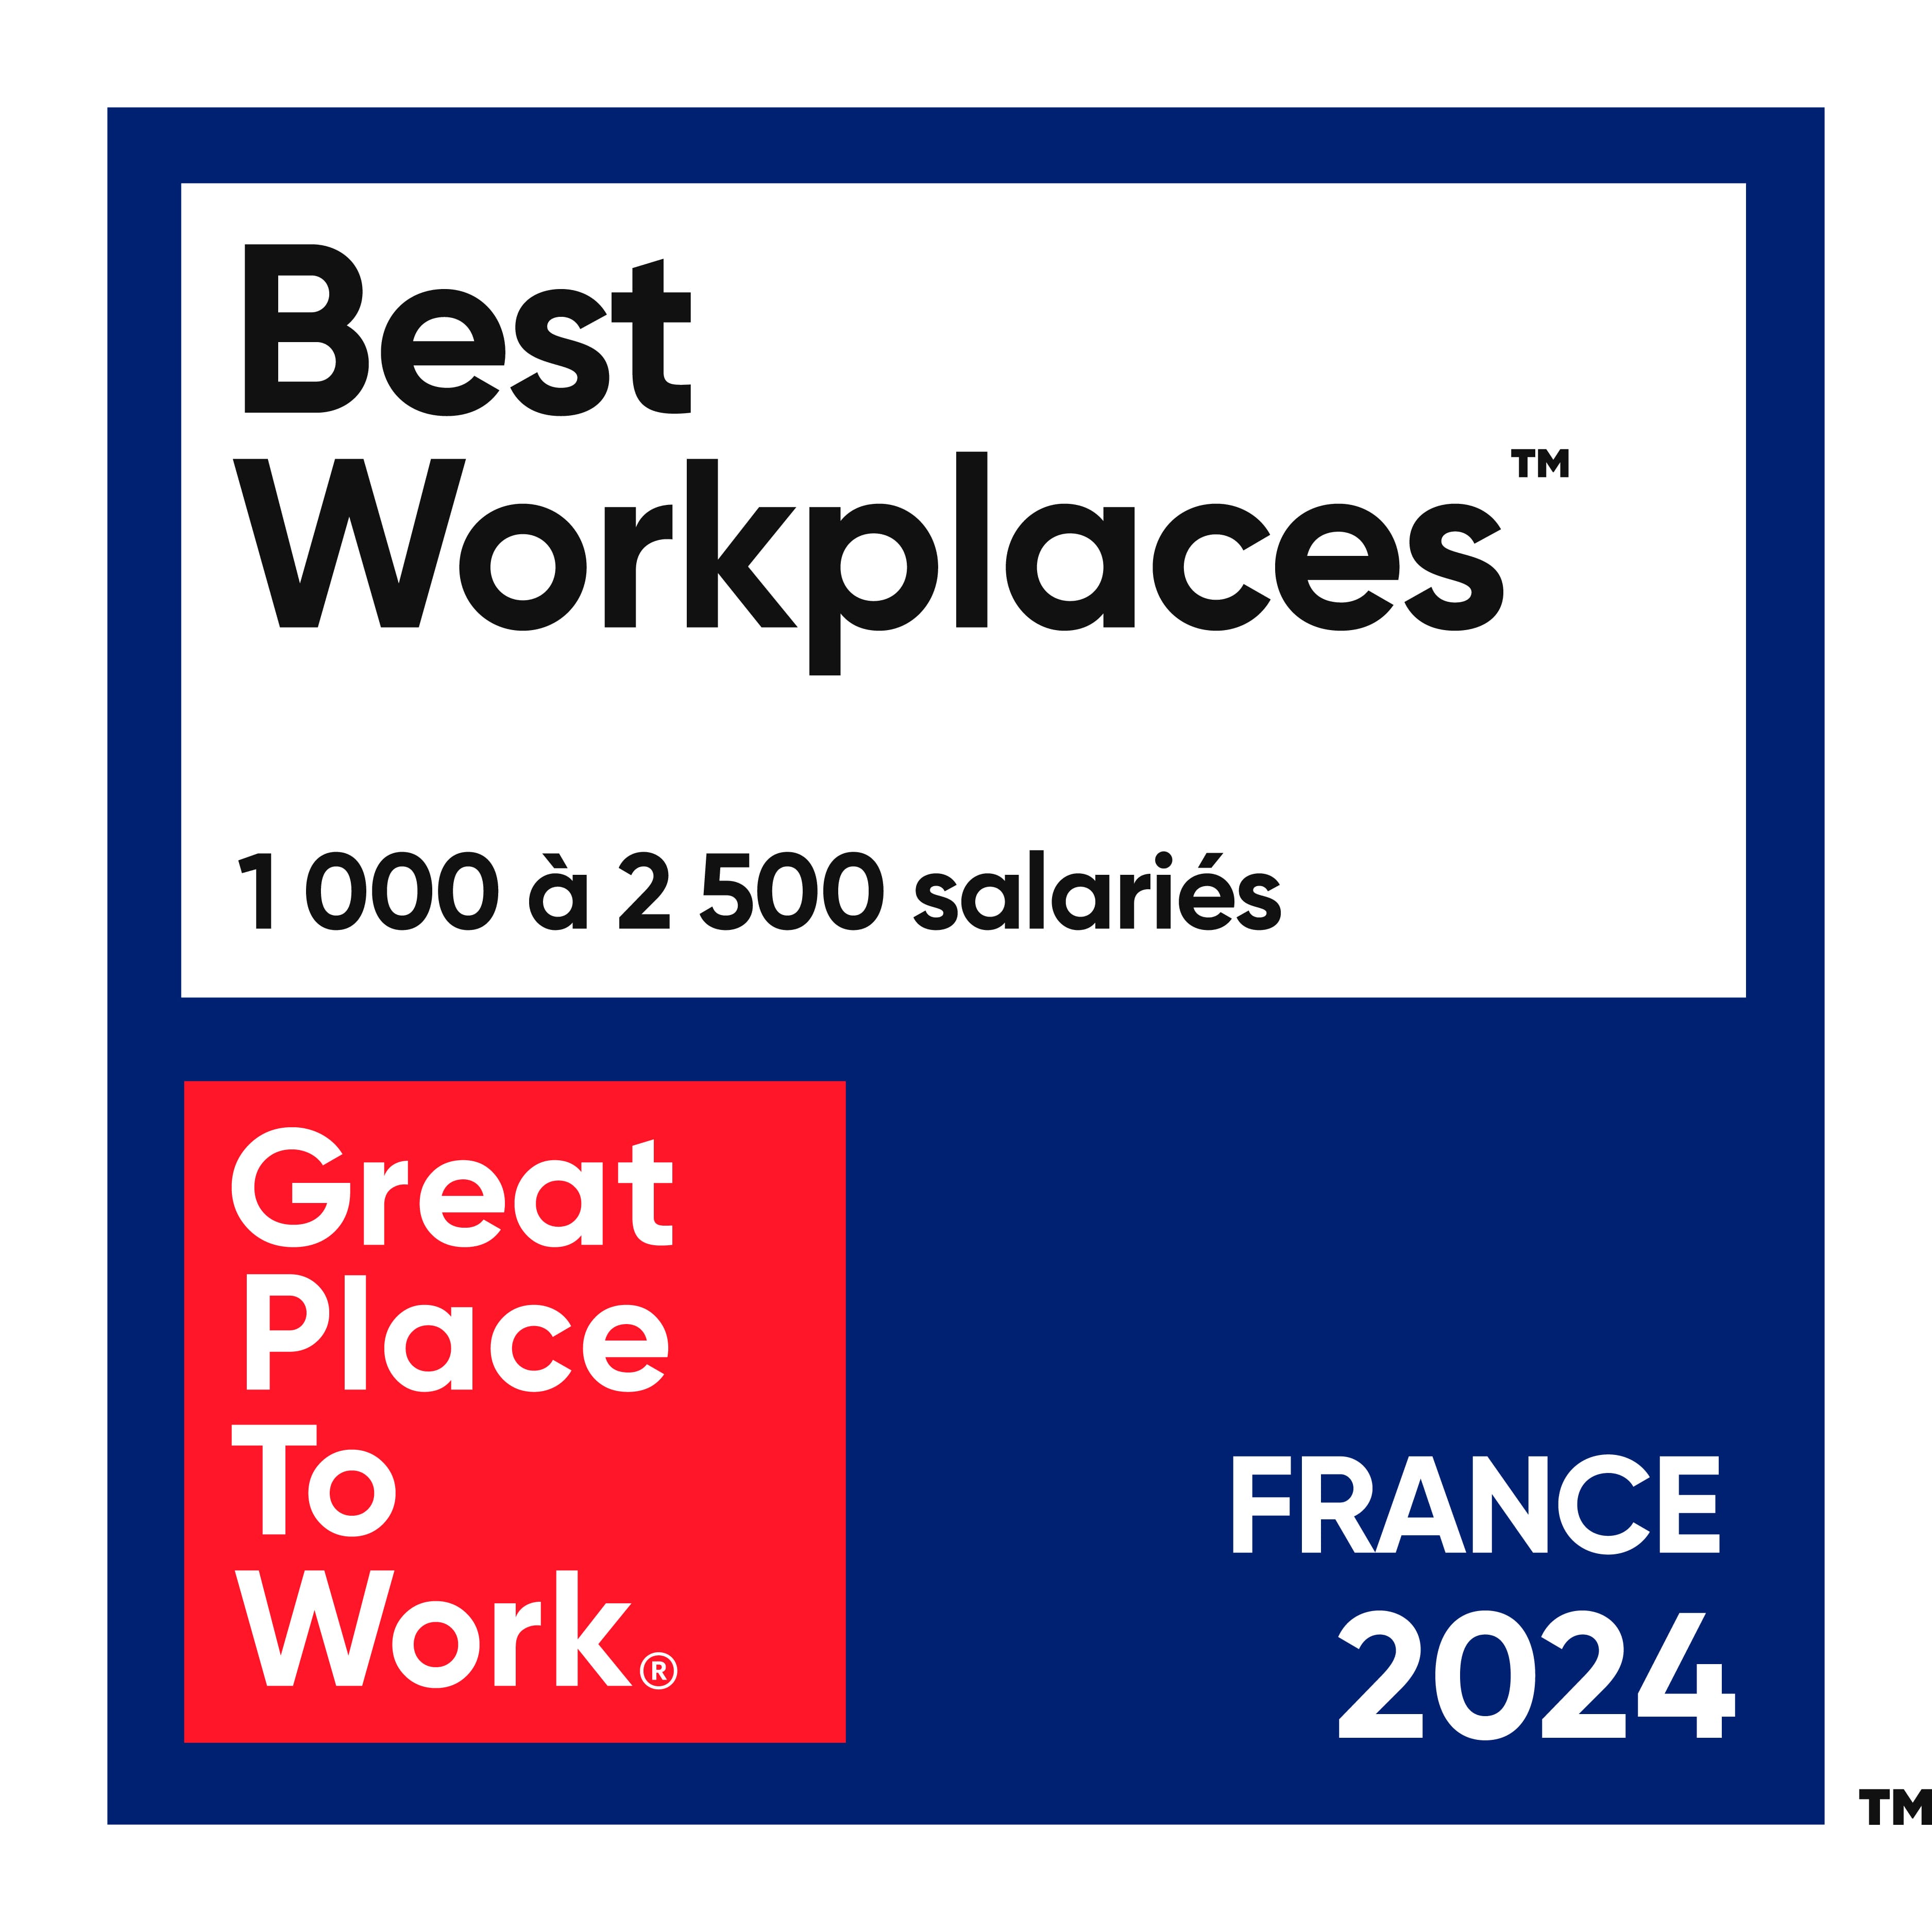 Best Workplaces 1000 à 2500 salariés. Great Place to Work. France 2024